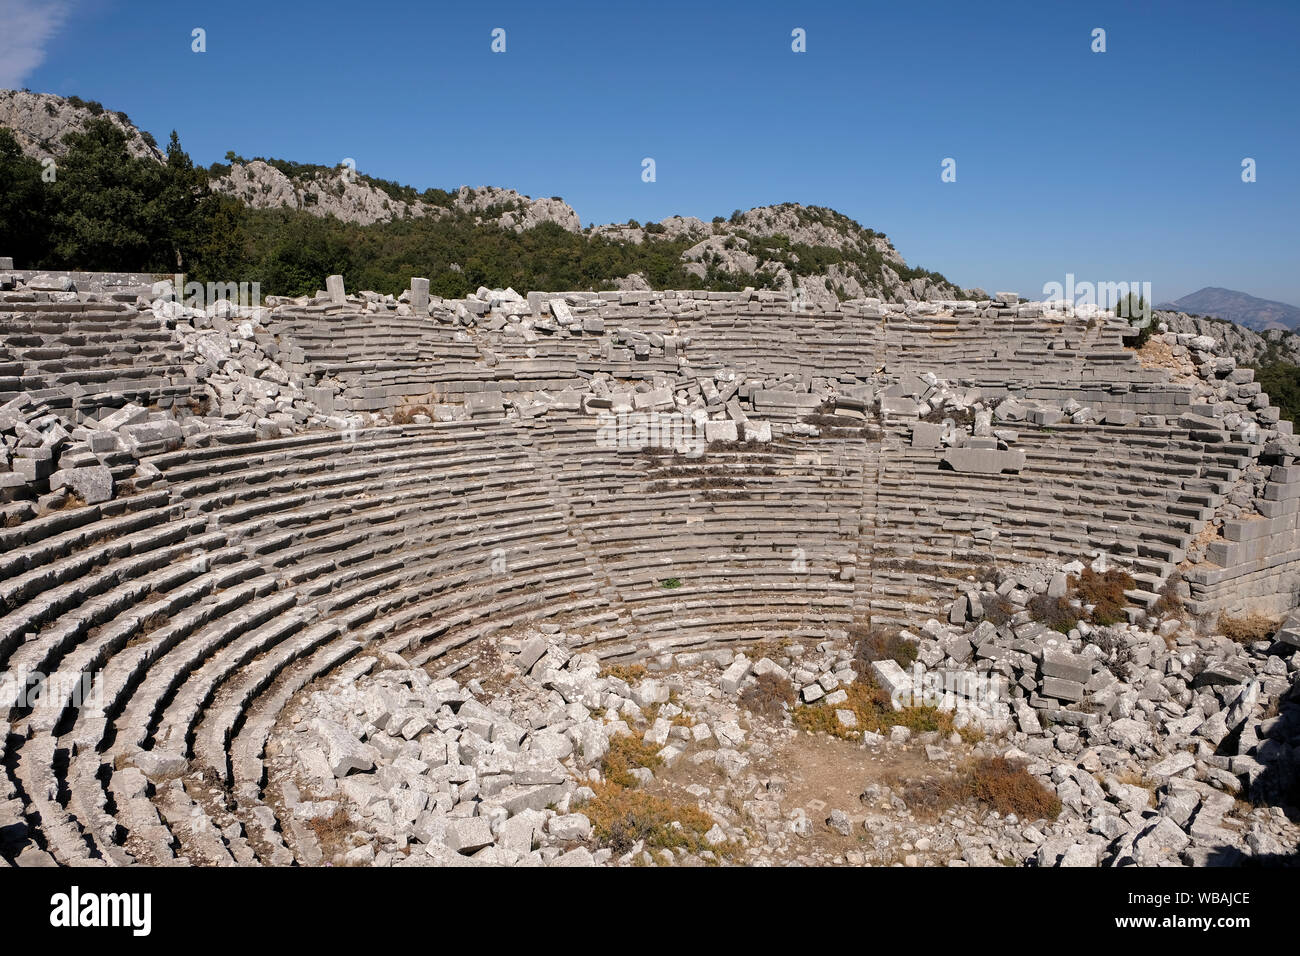 Termessos è uno di Turchia meglio conservate città antiche e più eccellenti siti archeologici, situato nella provincia di Antalya. Foto Stock